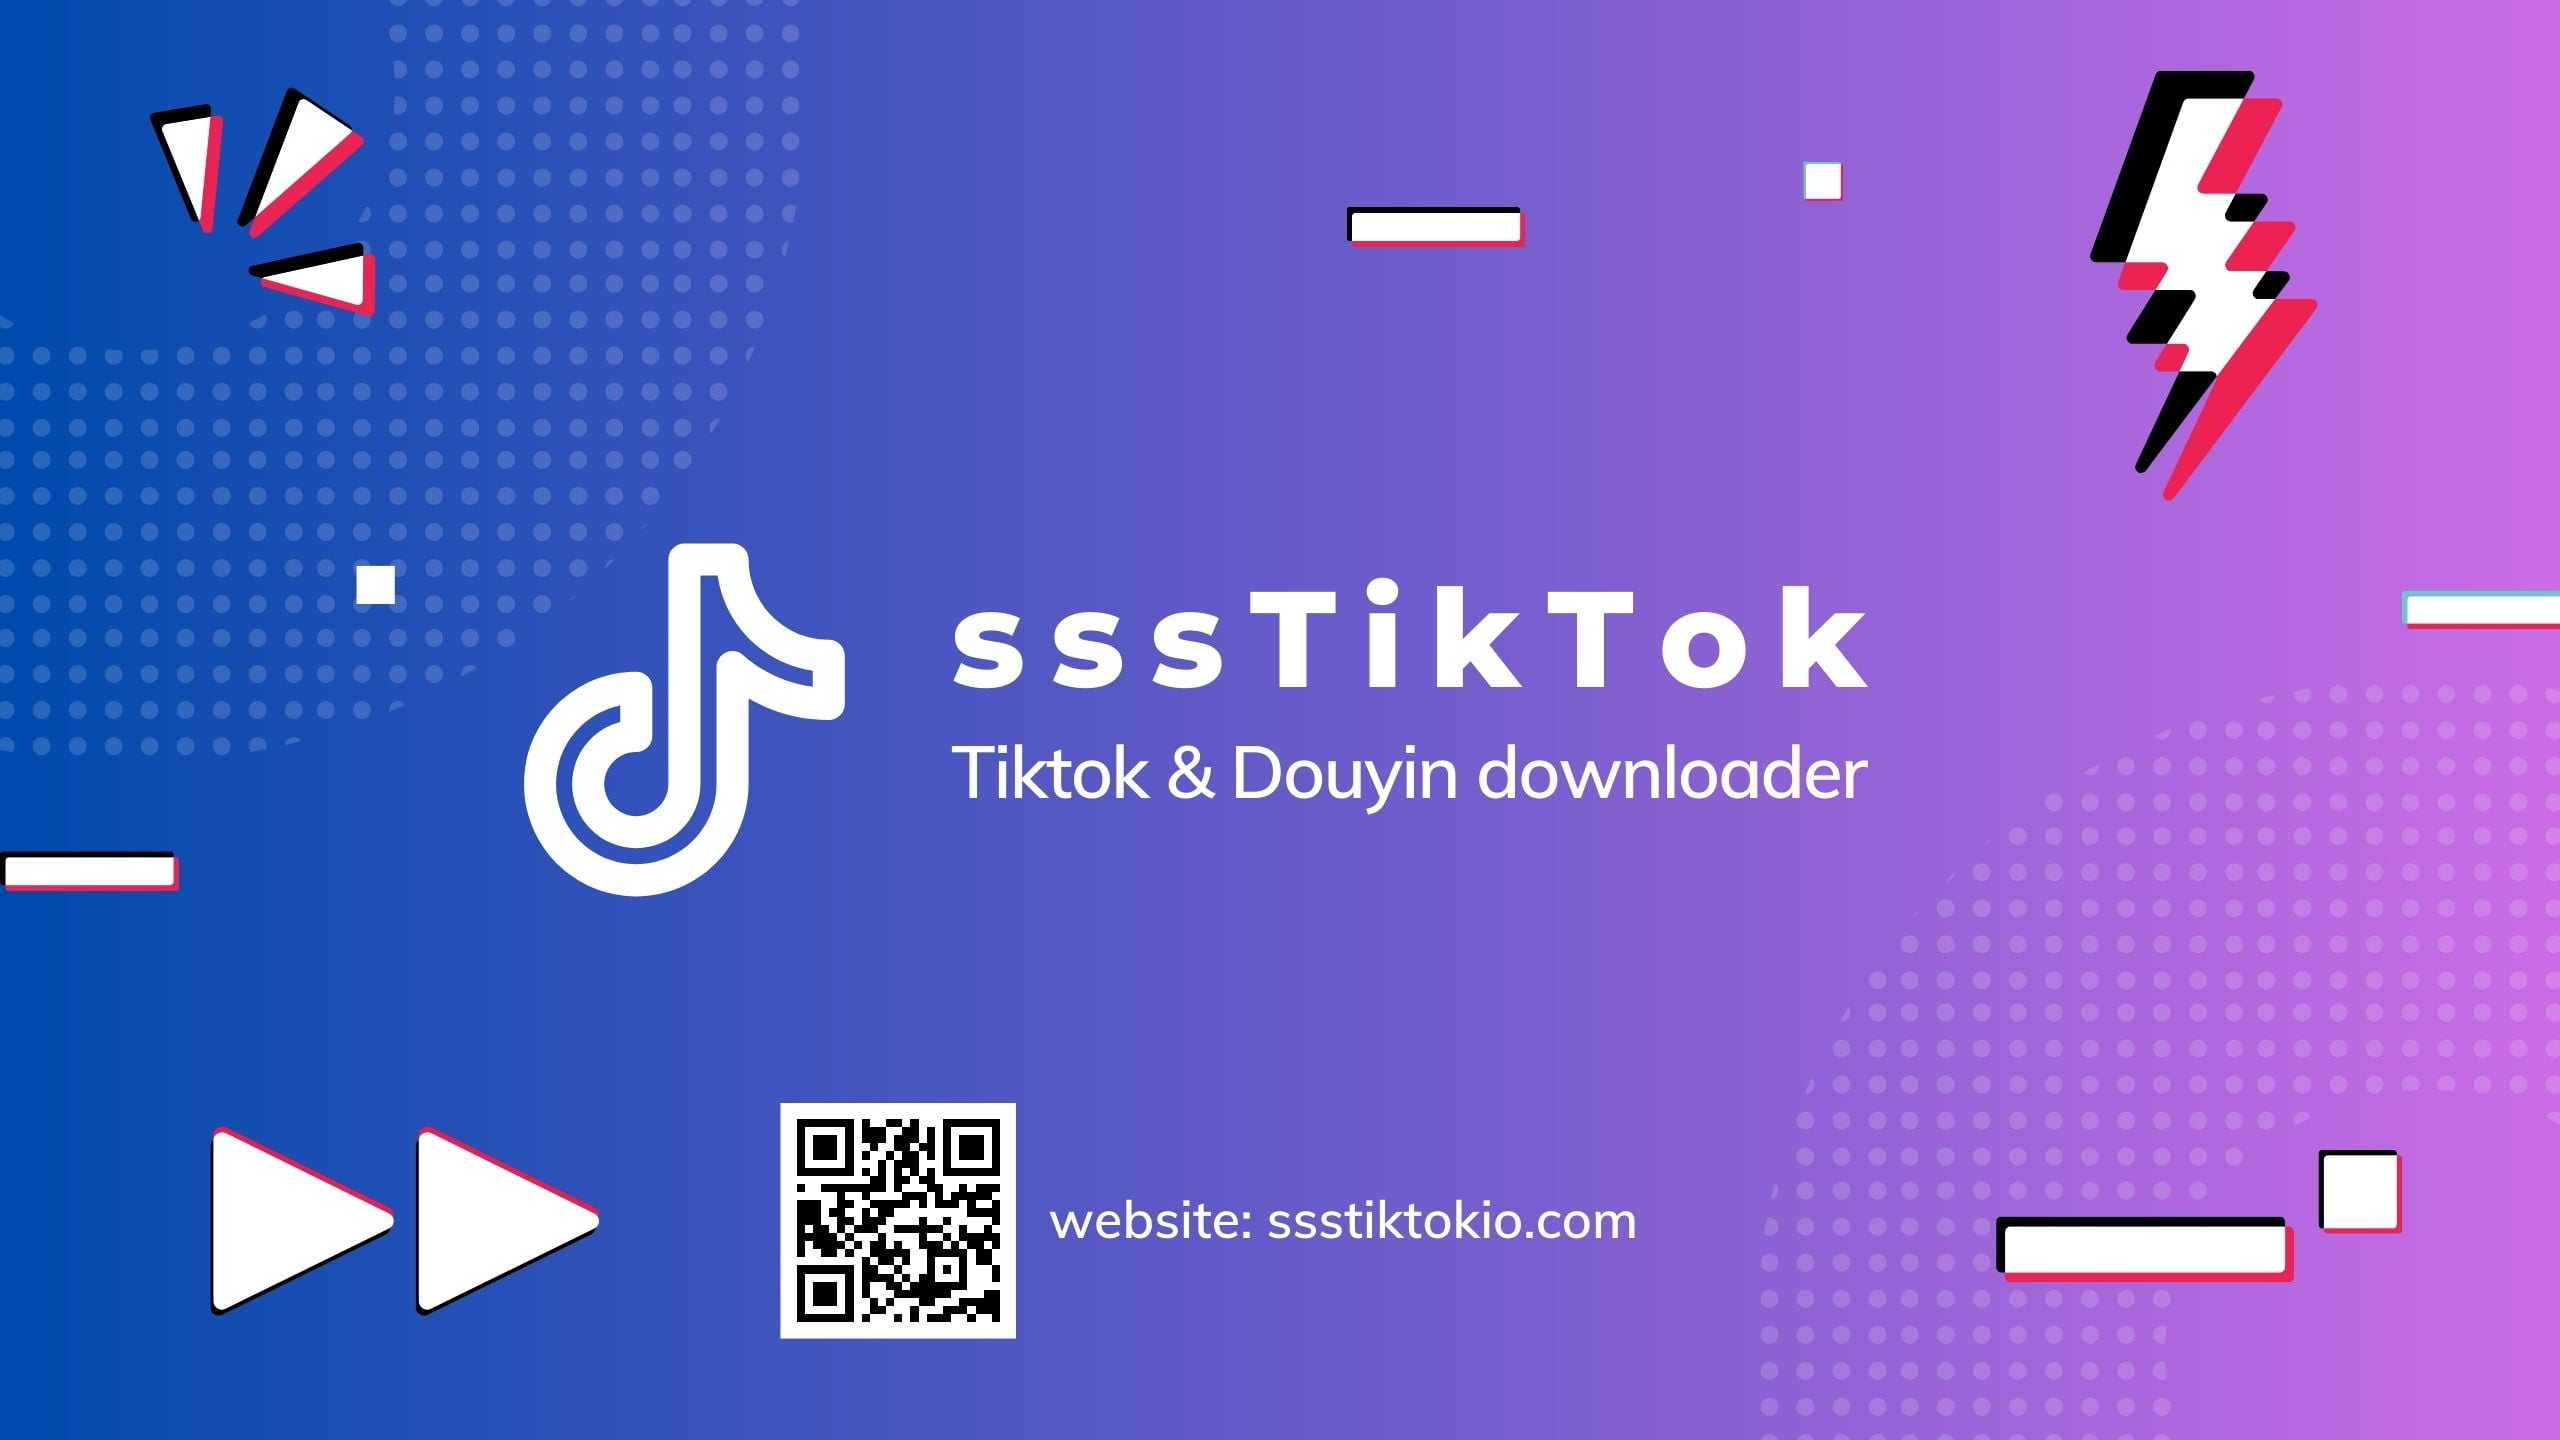 sssTiktok - Téléchargeur Tiktok en ligne - Téléchargement gratuit de vidéos Tiktok